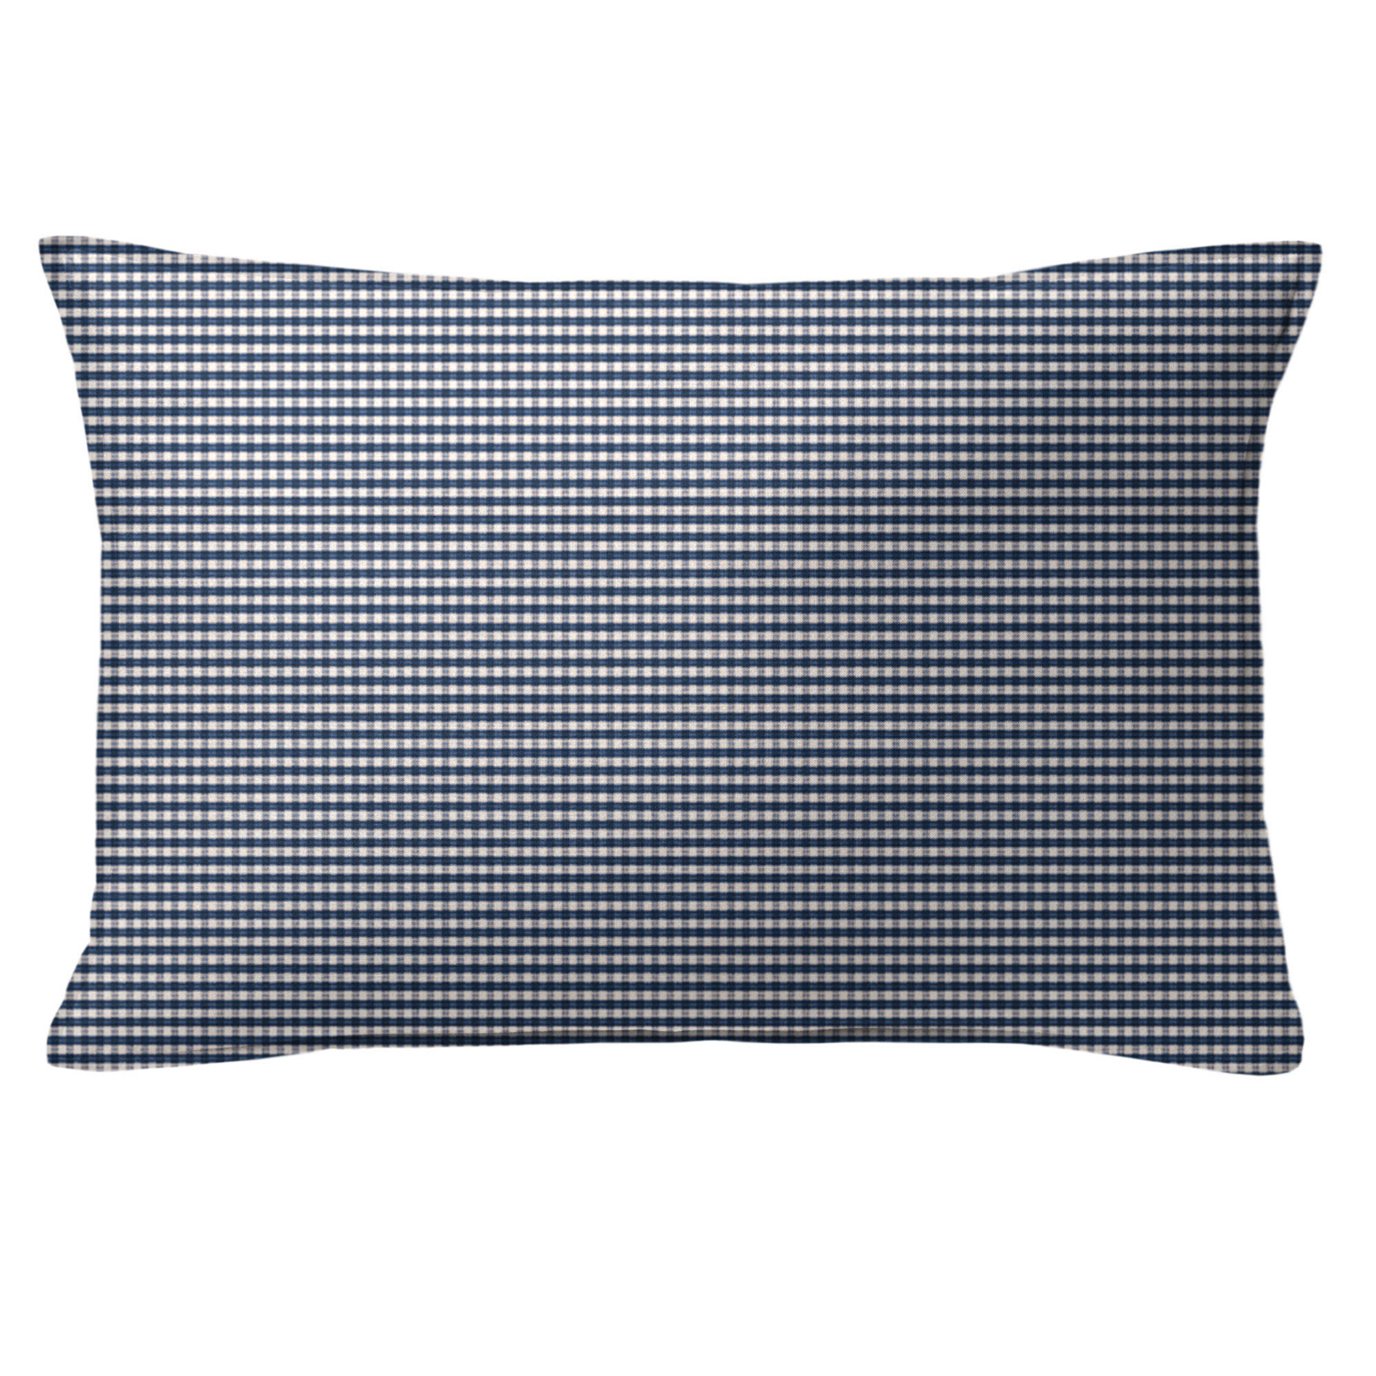 Rockton Check Indigo Decorative Pillow - Size 14"x20" Rectangle